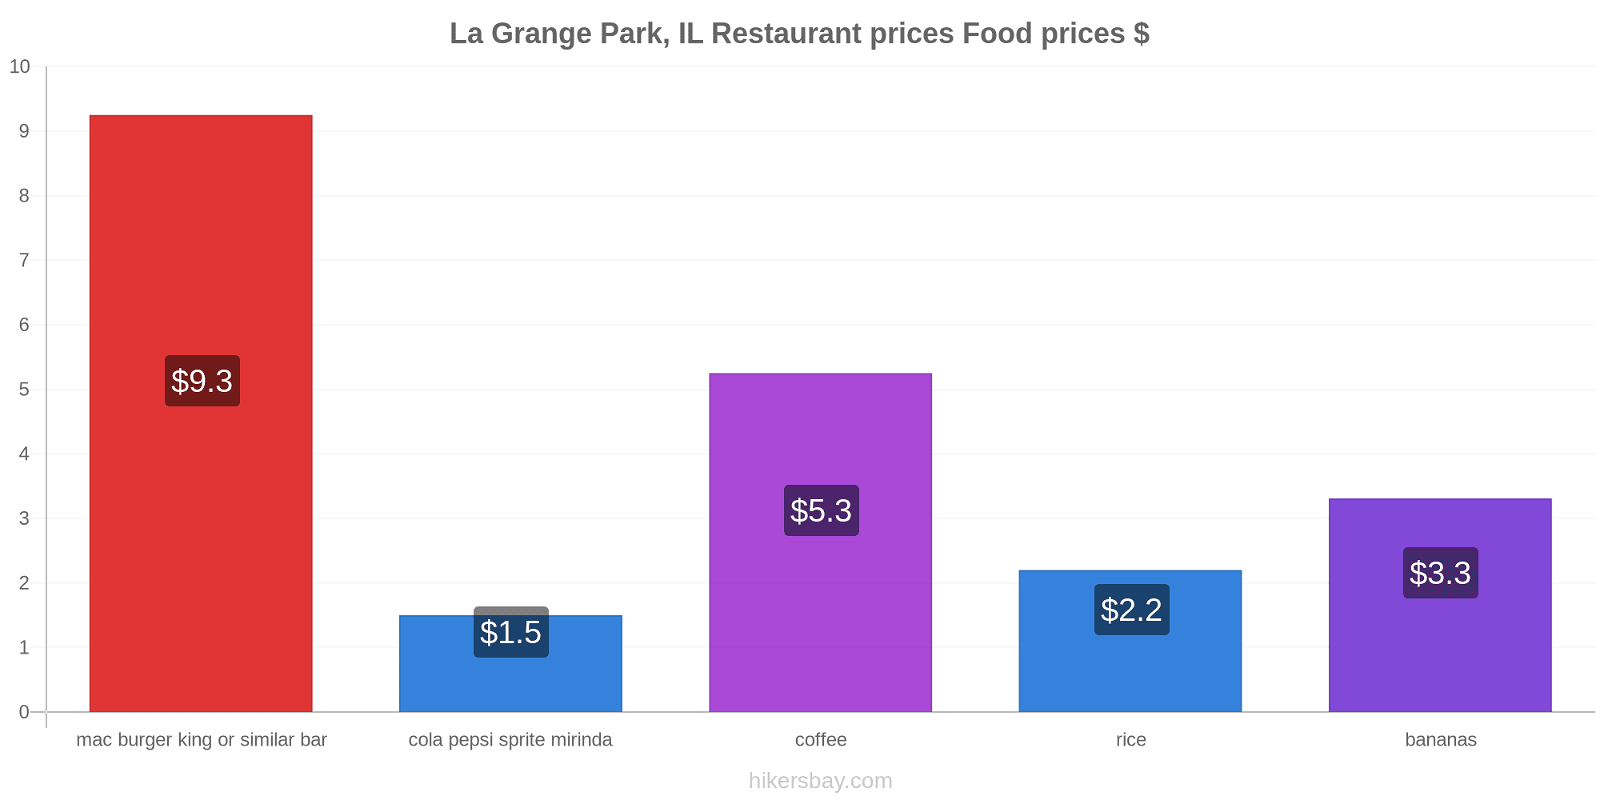 La Grange Park, IL price changes hikersbay.com